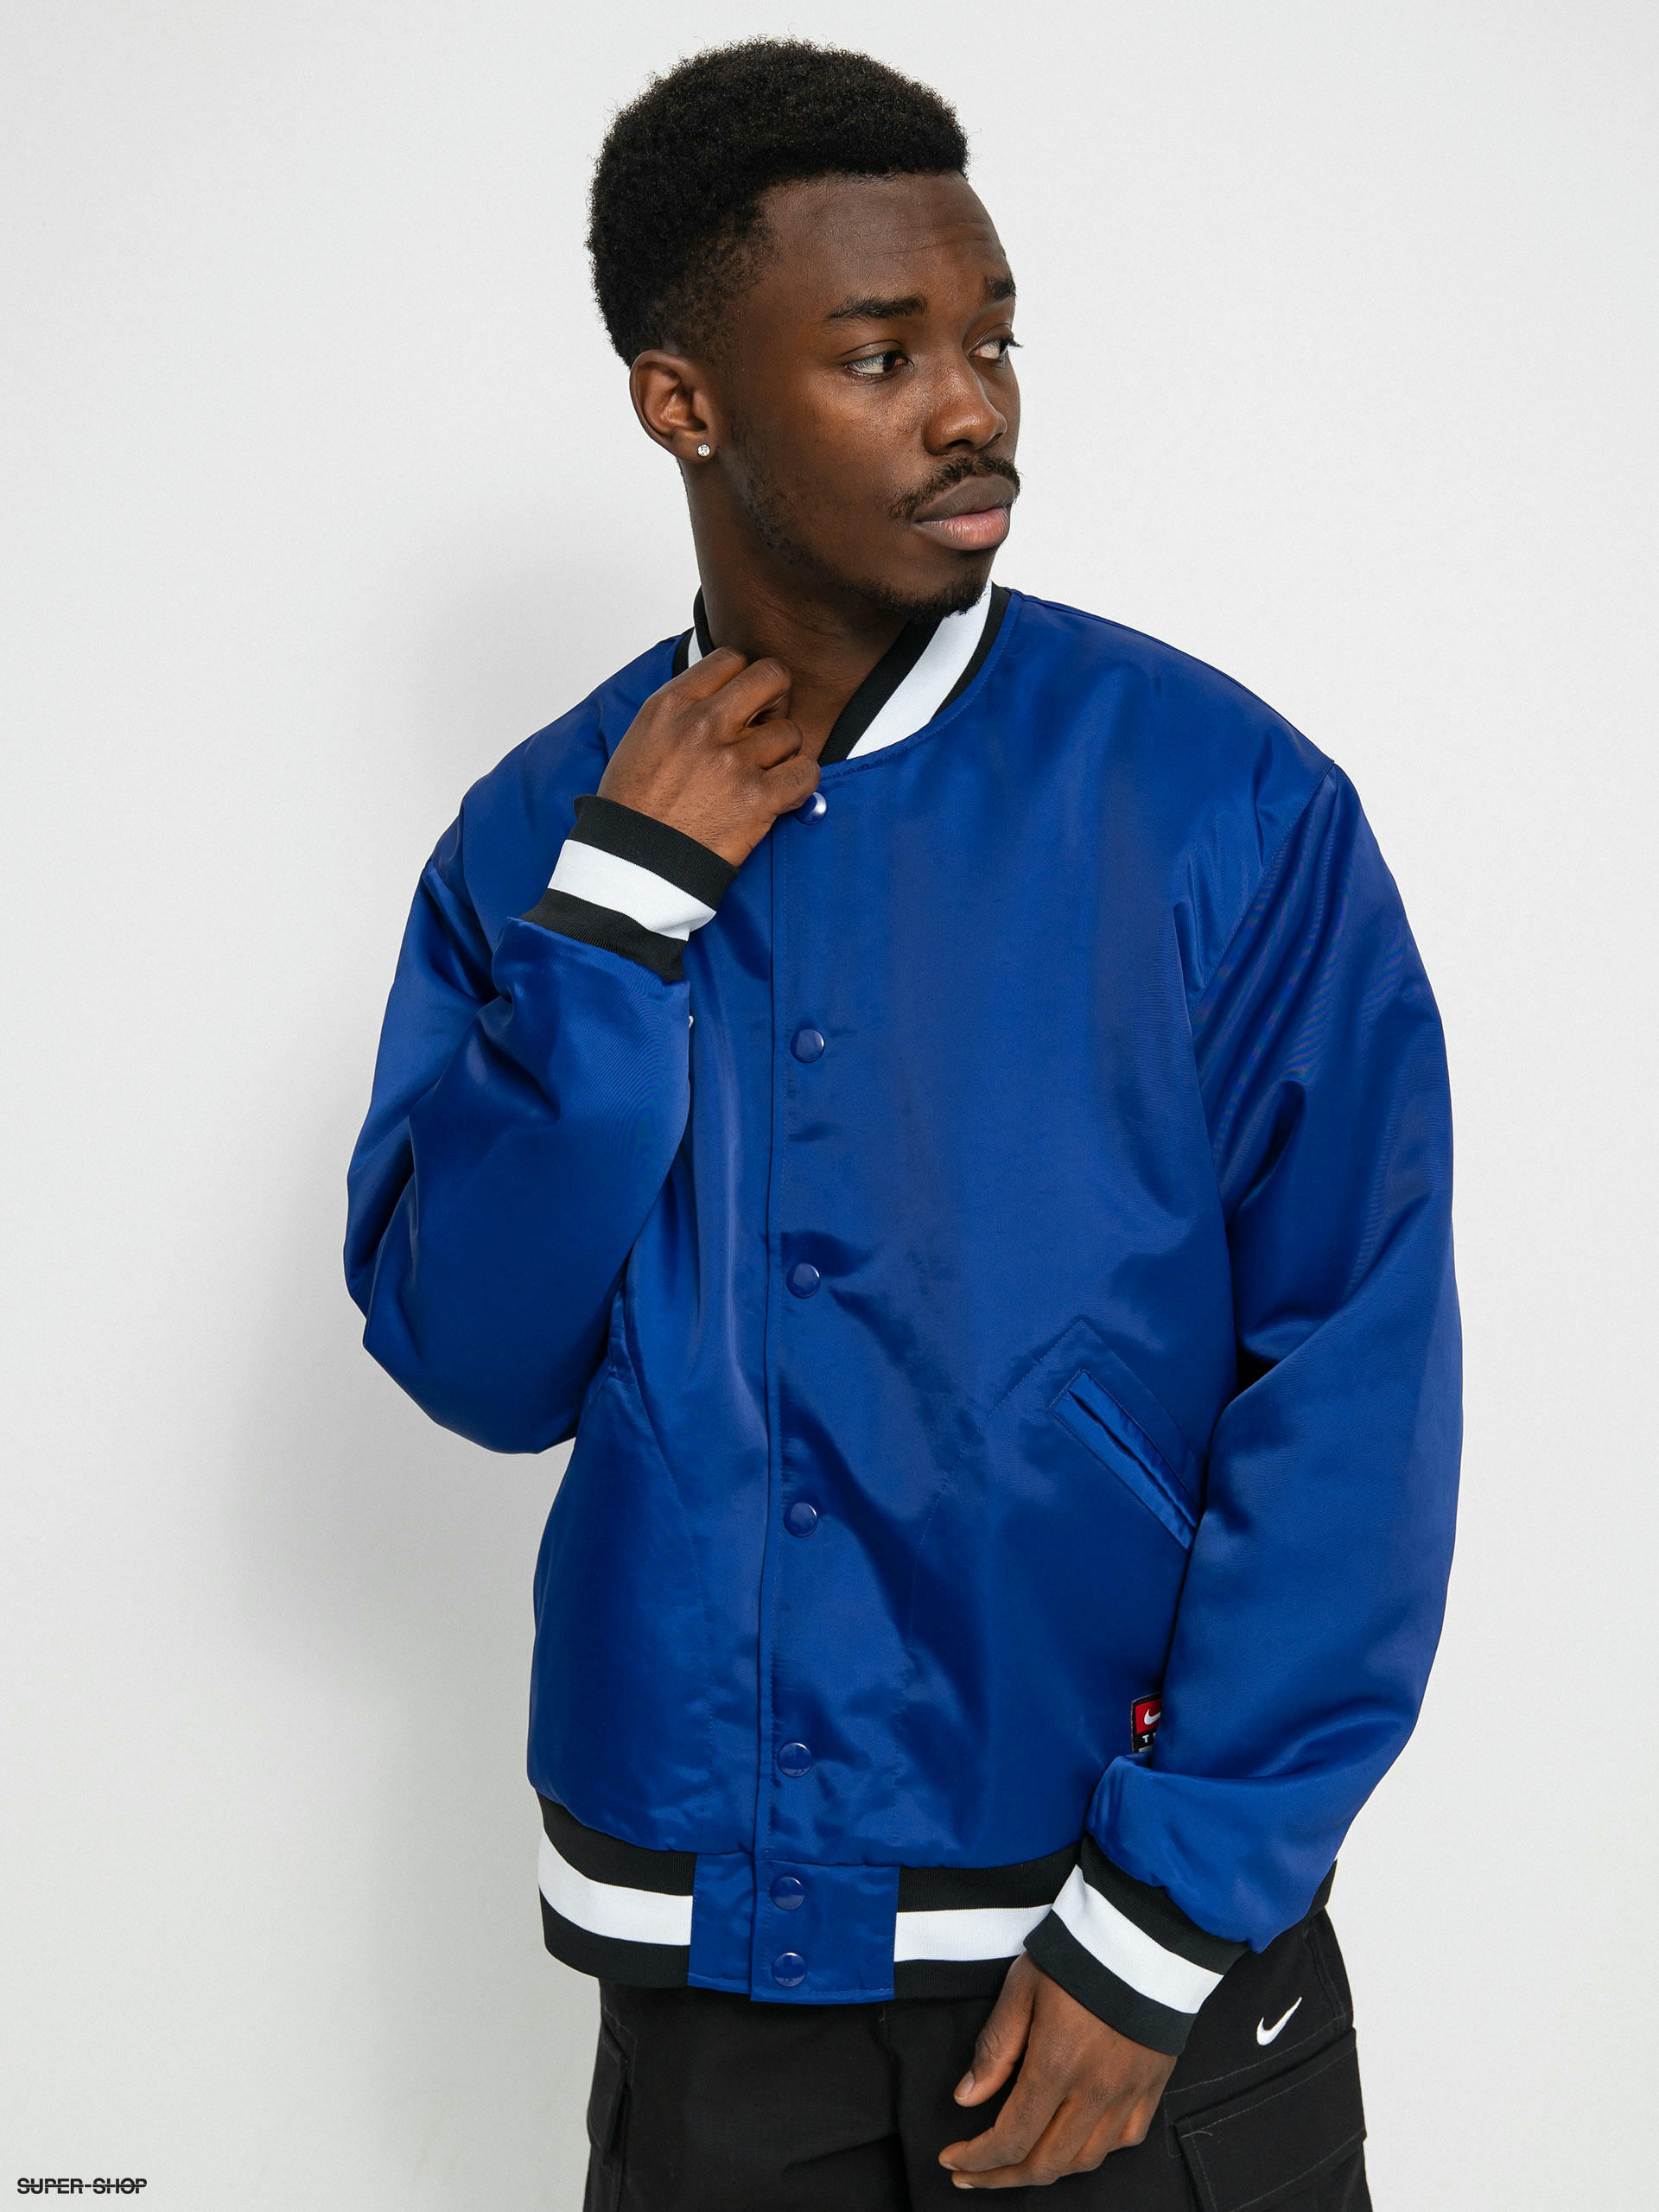 Royal Blue & White Varsity Jacket for Men - Timeless Design